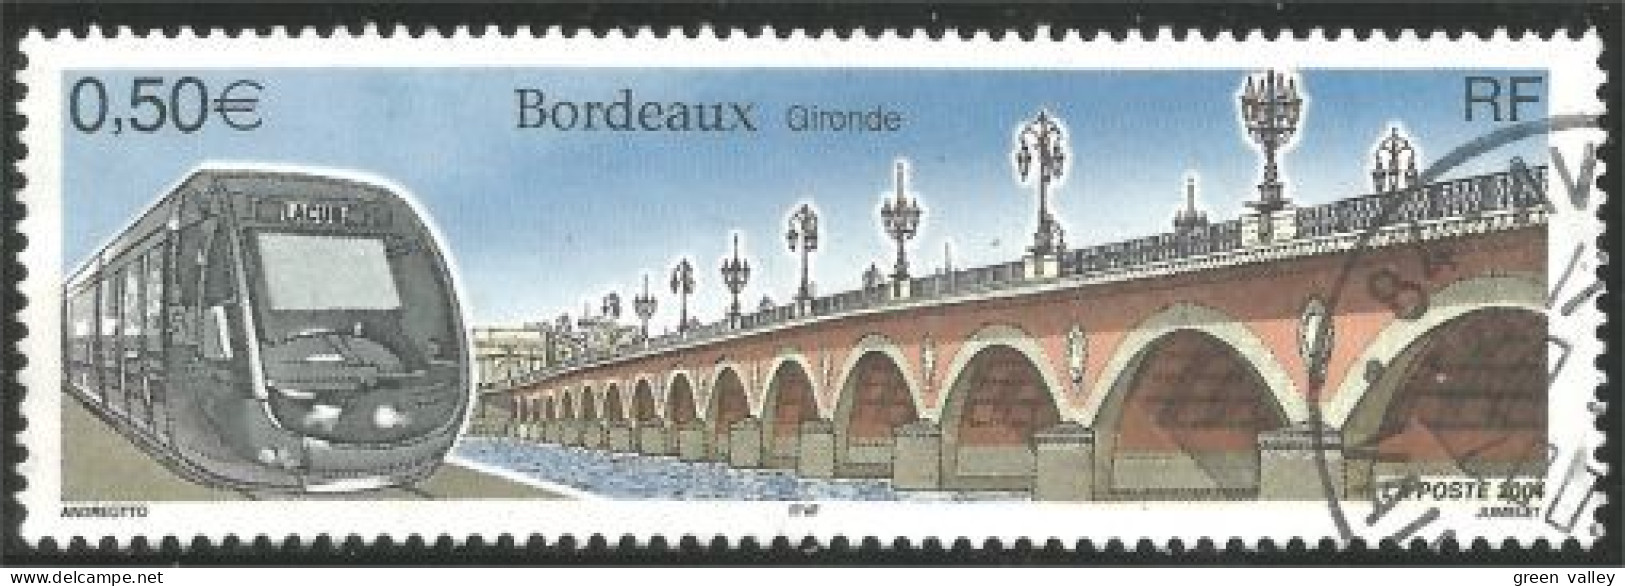 331eu-157 France Bordeaux Train Railway Pont Bridge Brucke - Treni